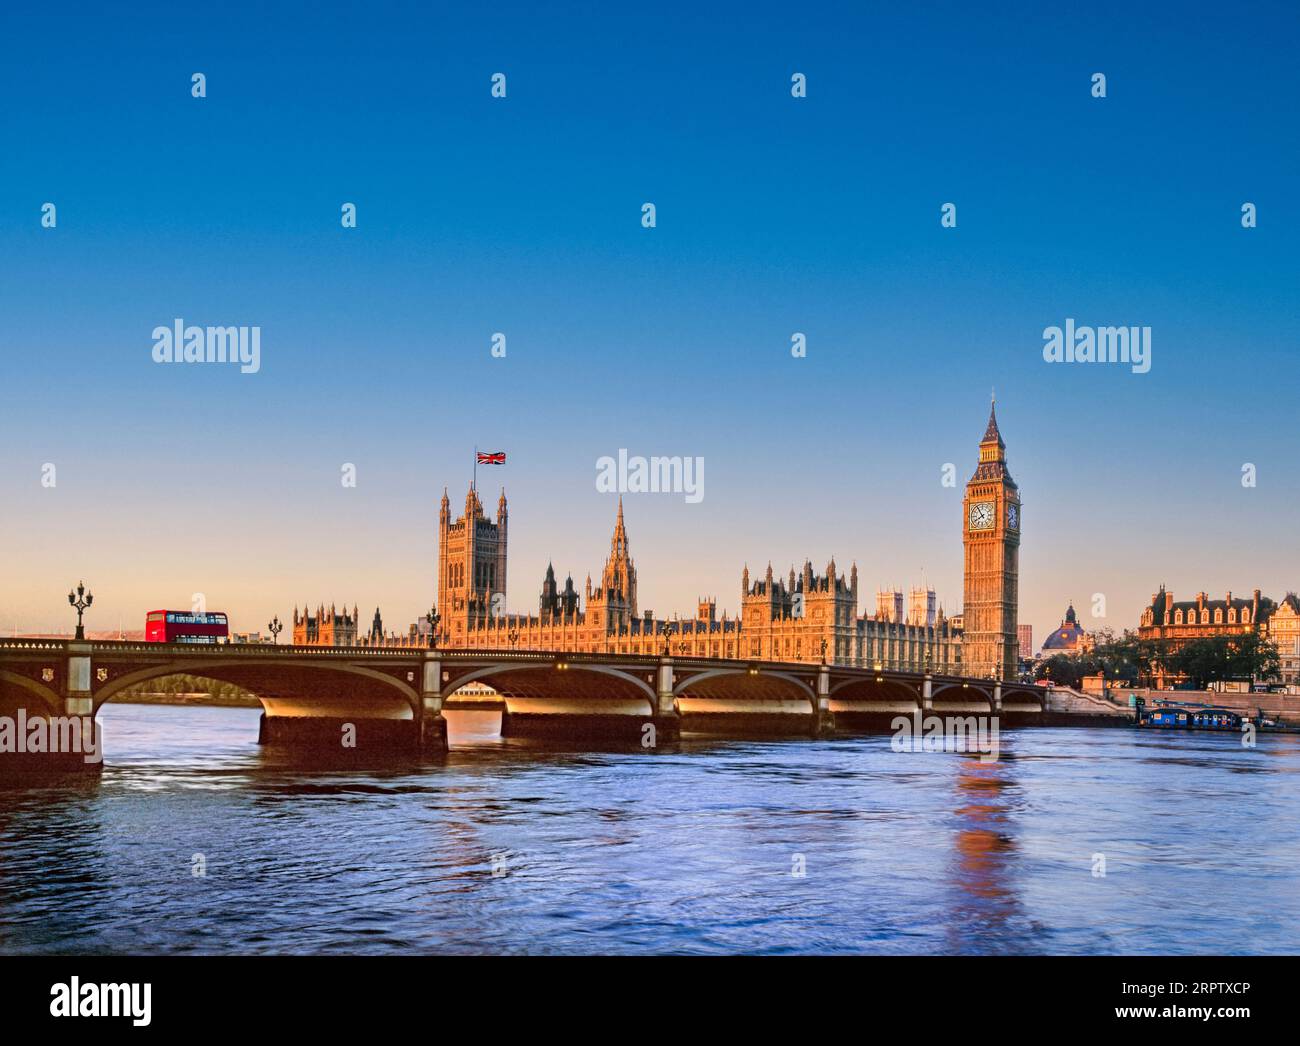 Houses of Parliament Westminster UK mit der Union Jack Flagge, beleuchtet bei Sonnenaufgang bei Sonnenaufgang, roter Londoner Bus auf der Westminster Bridge. Themse bei Flut von South Bank London UK. Reiseziel der Landschaft von London Stockfoto